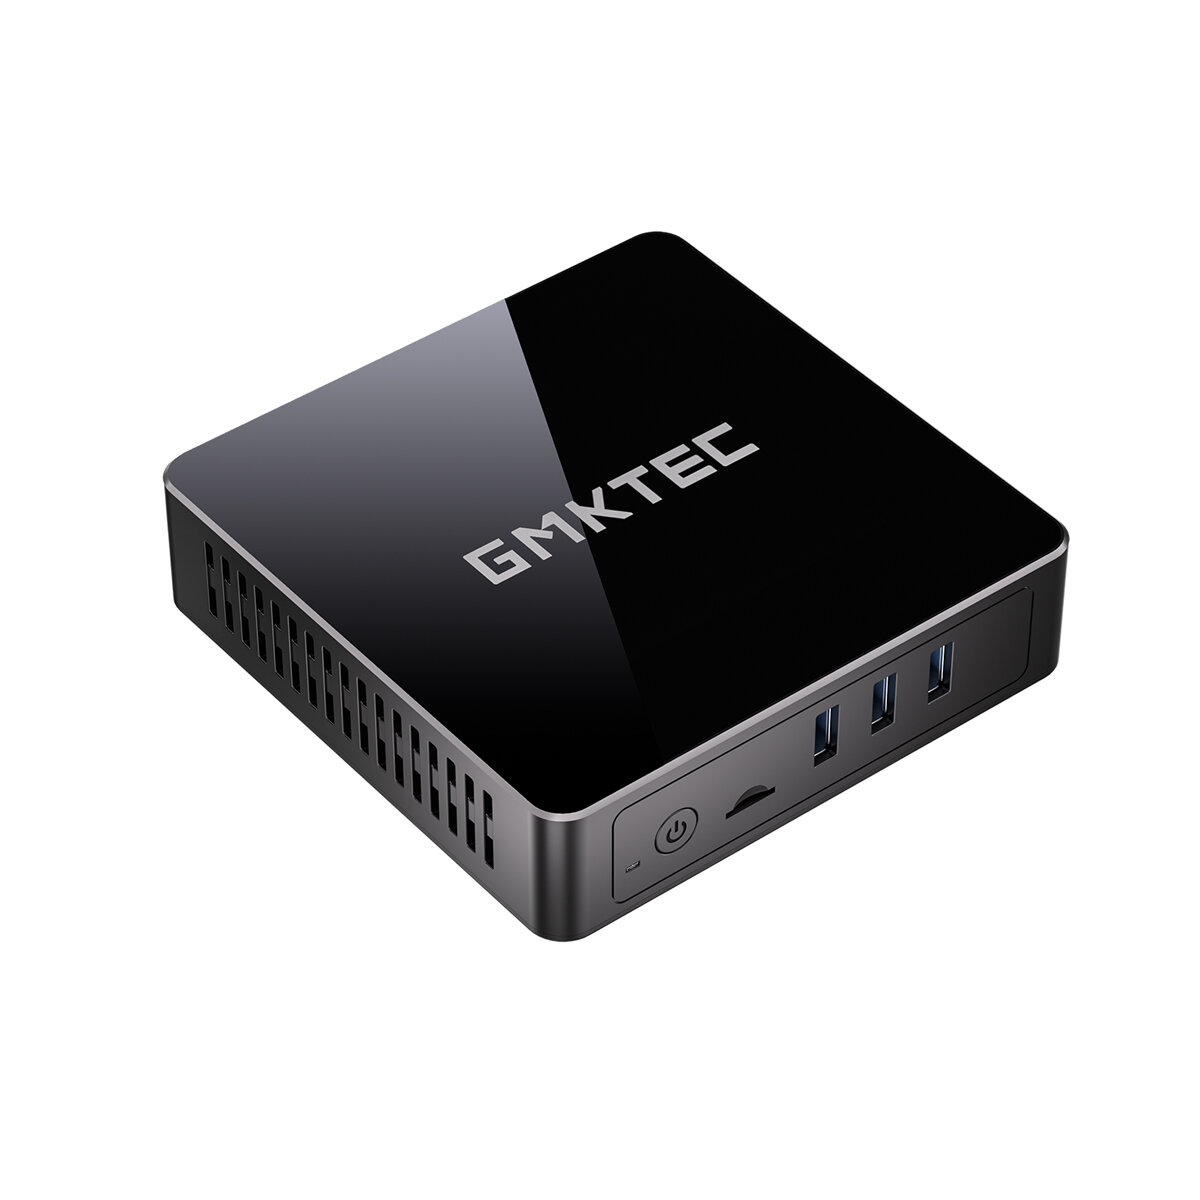 GMKTEC NucBox3 Intel J4125 Mini PC 8GB DDR4 2400MHz 256GB SSD Quad Core WiFi5 BT4.2 LAN HDMI DP Dubb